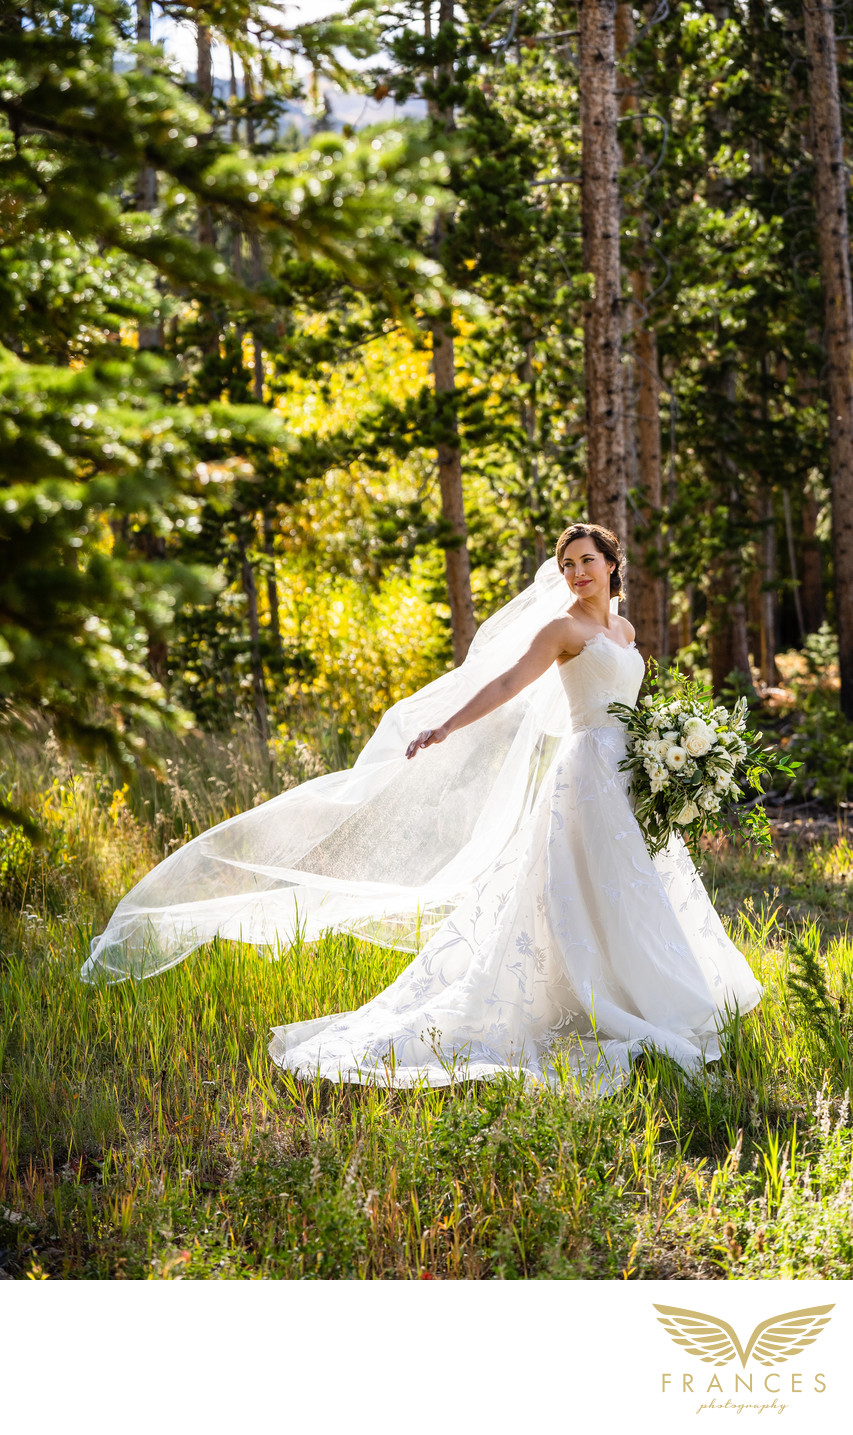 Breckenridge Colorado wedding photography outdoor bride